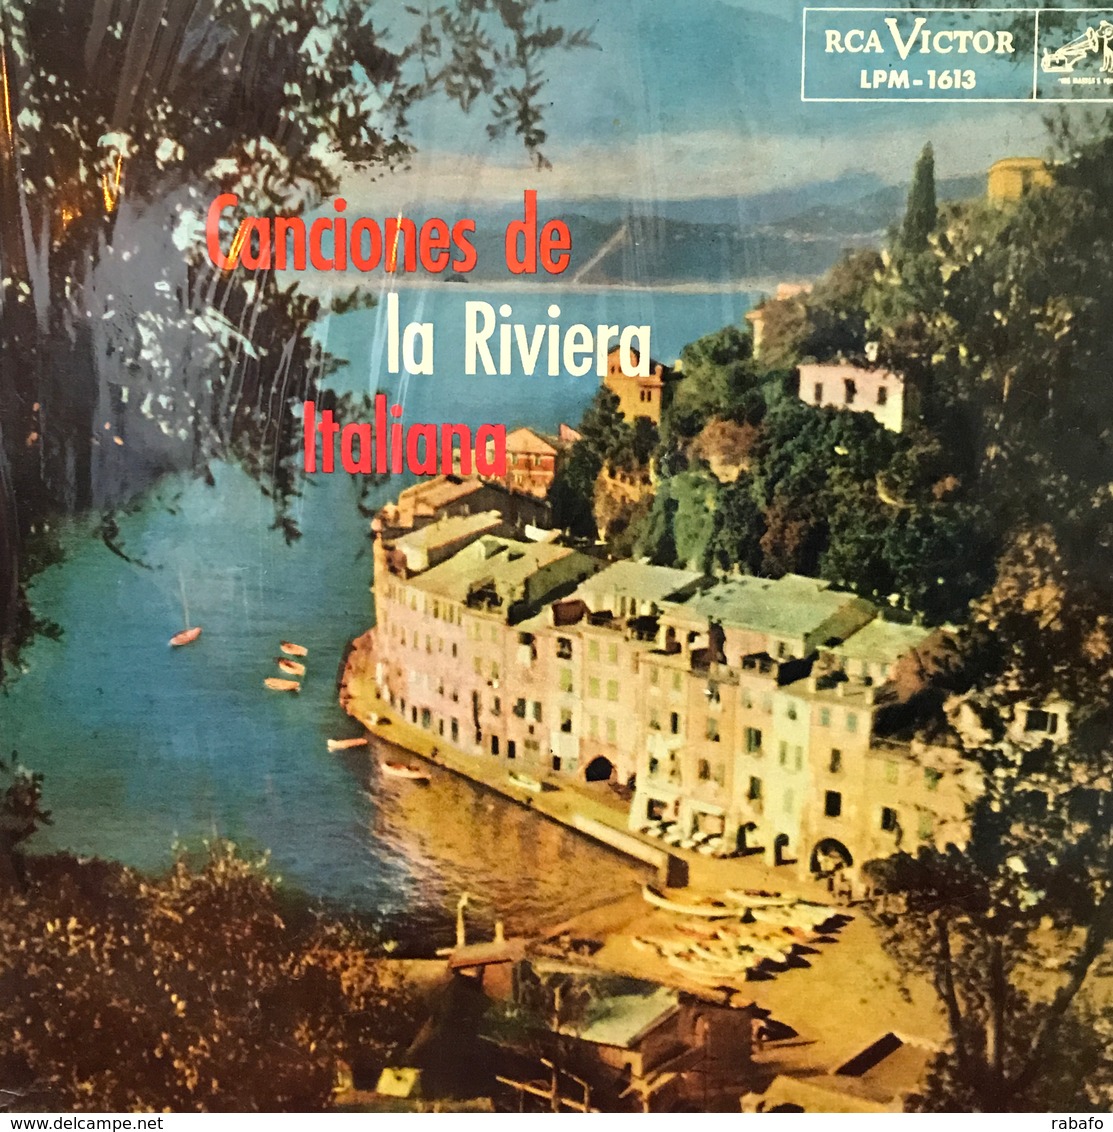 LP Argentino De Nilla Pizzi Año 1958 - Other - Italian Music